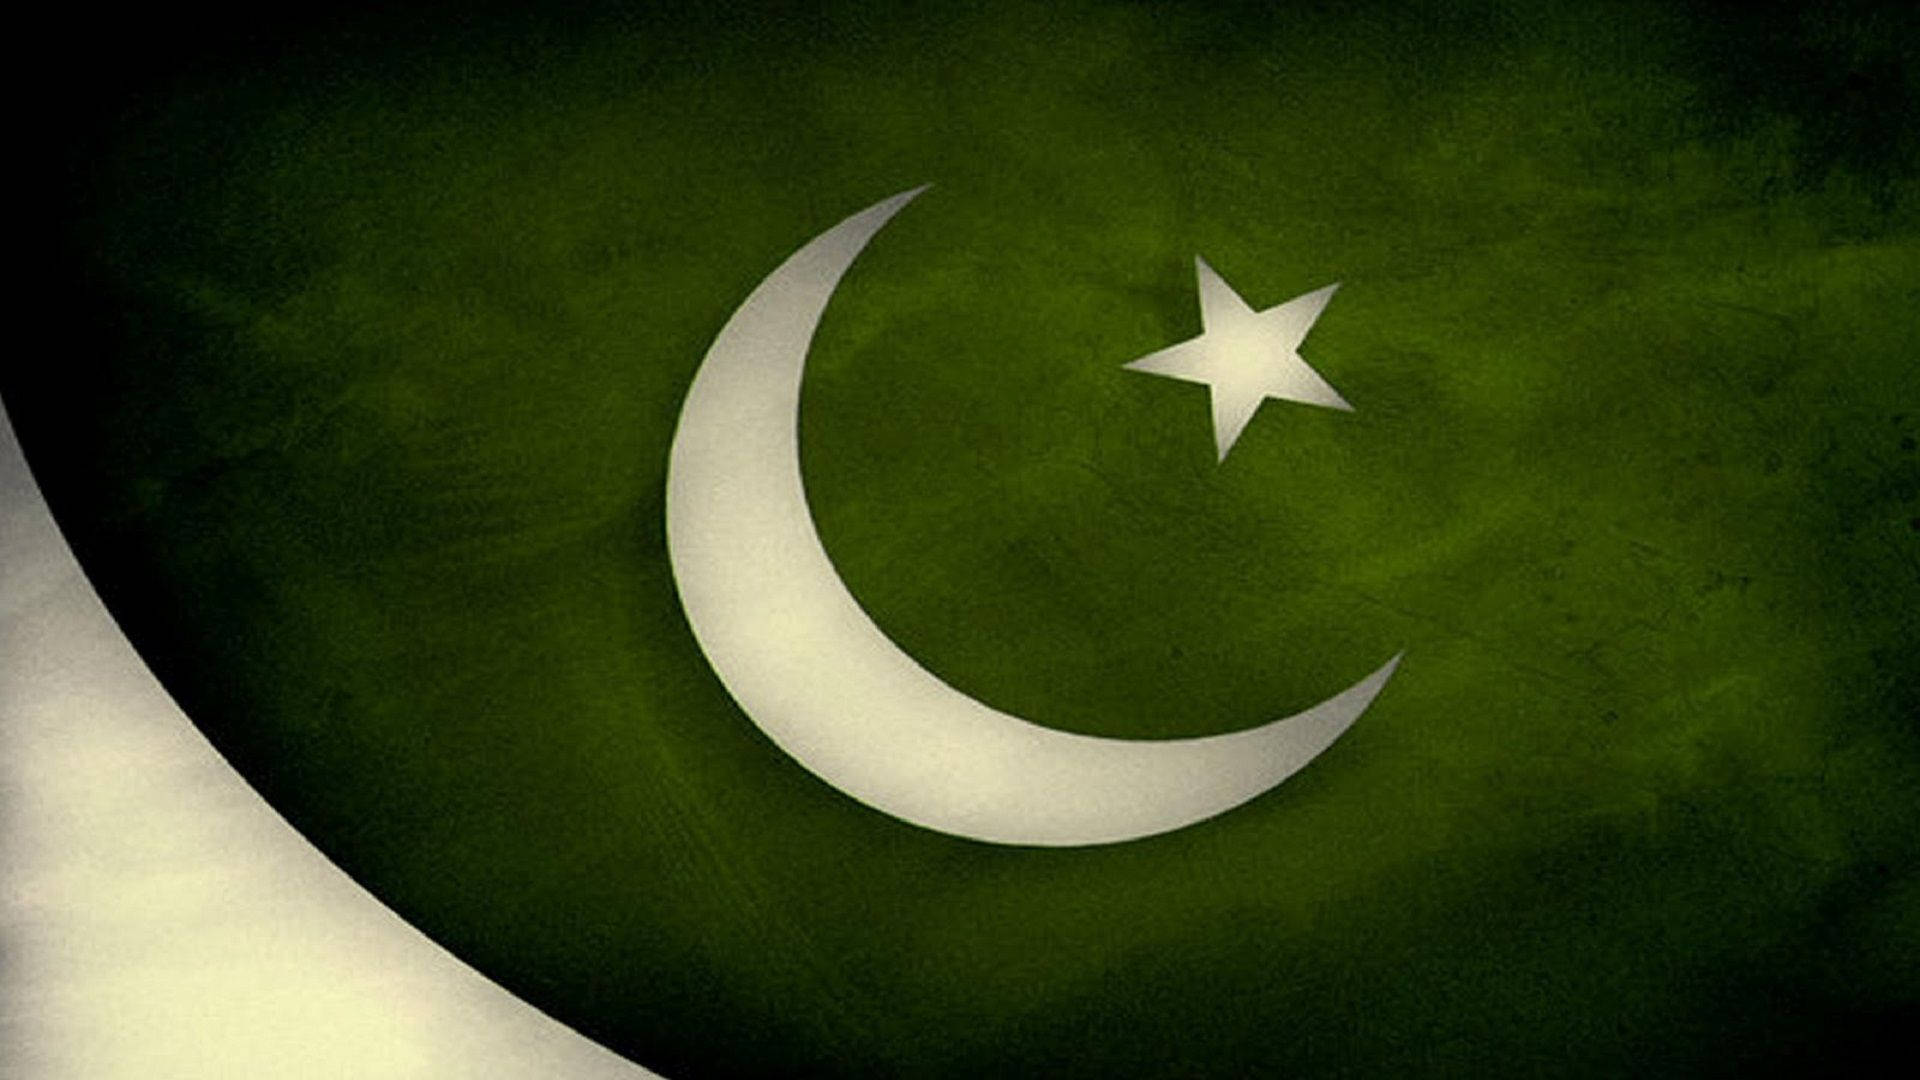 Pakistanischeflagge In Dunkelgrüner Farbe Wallpaper